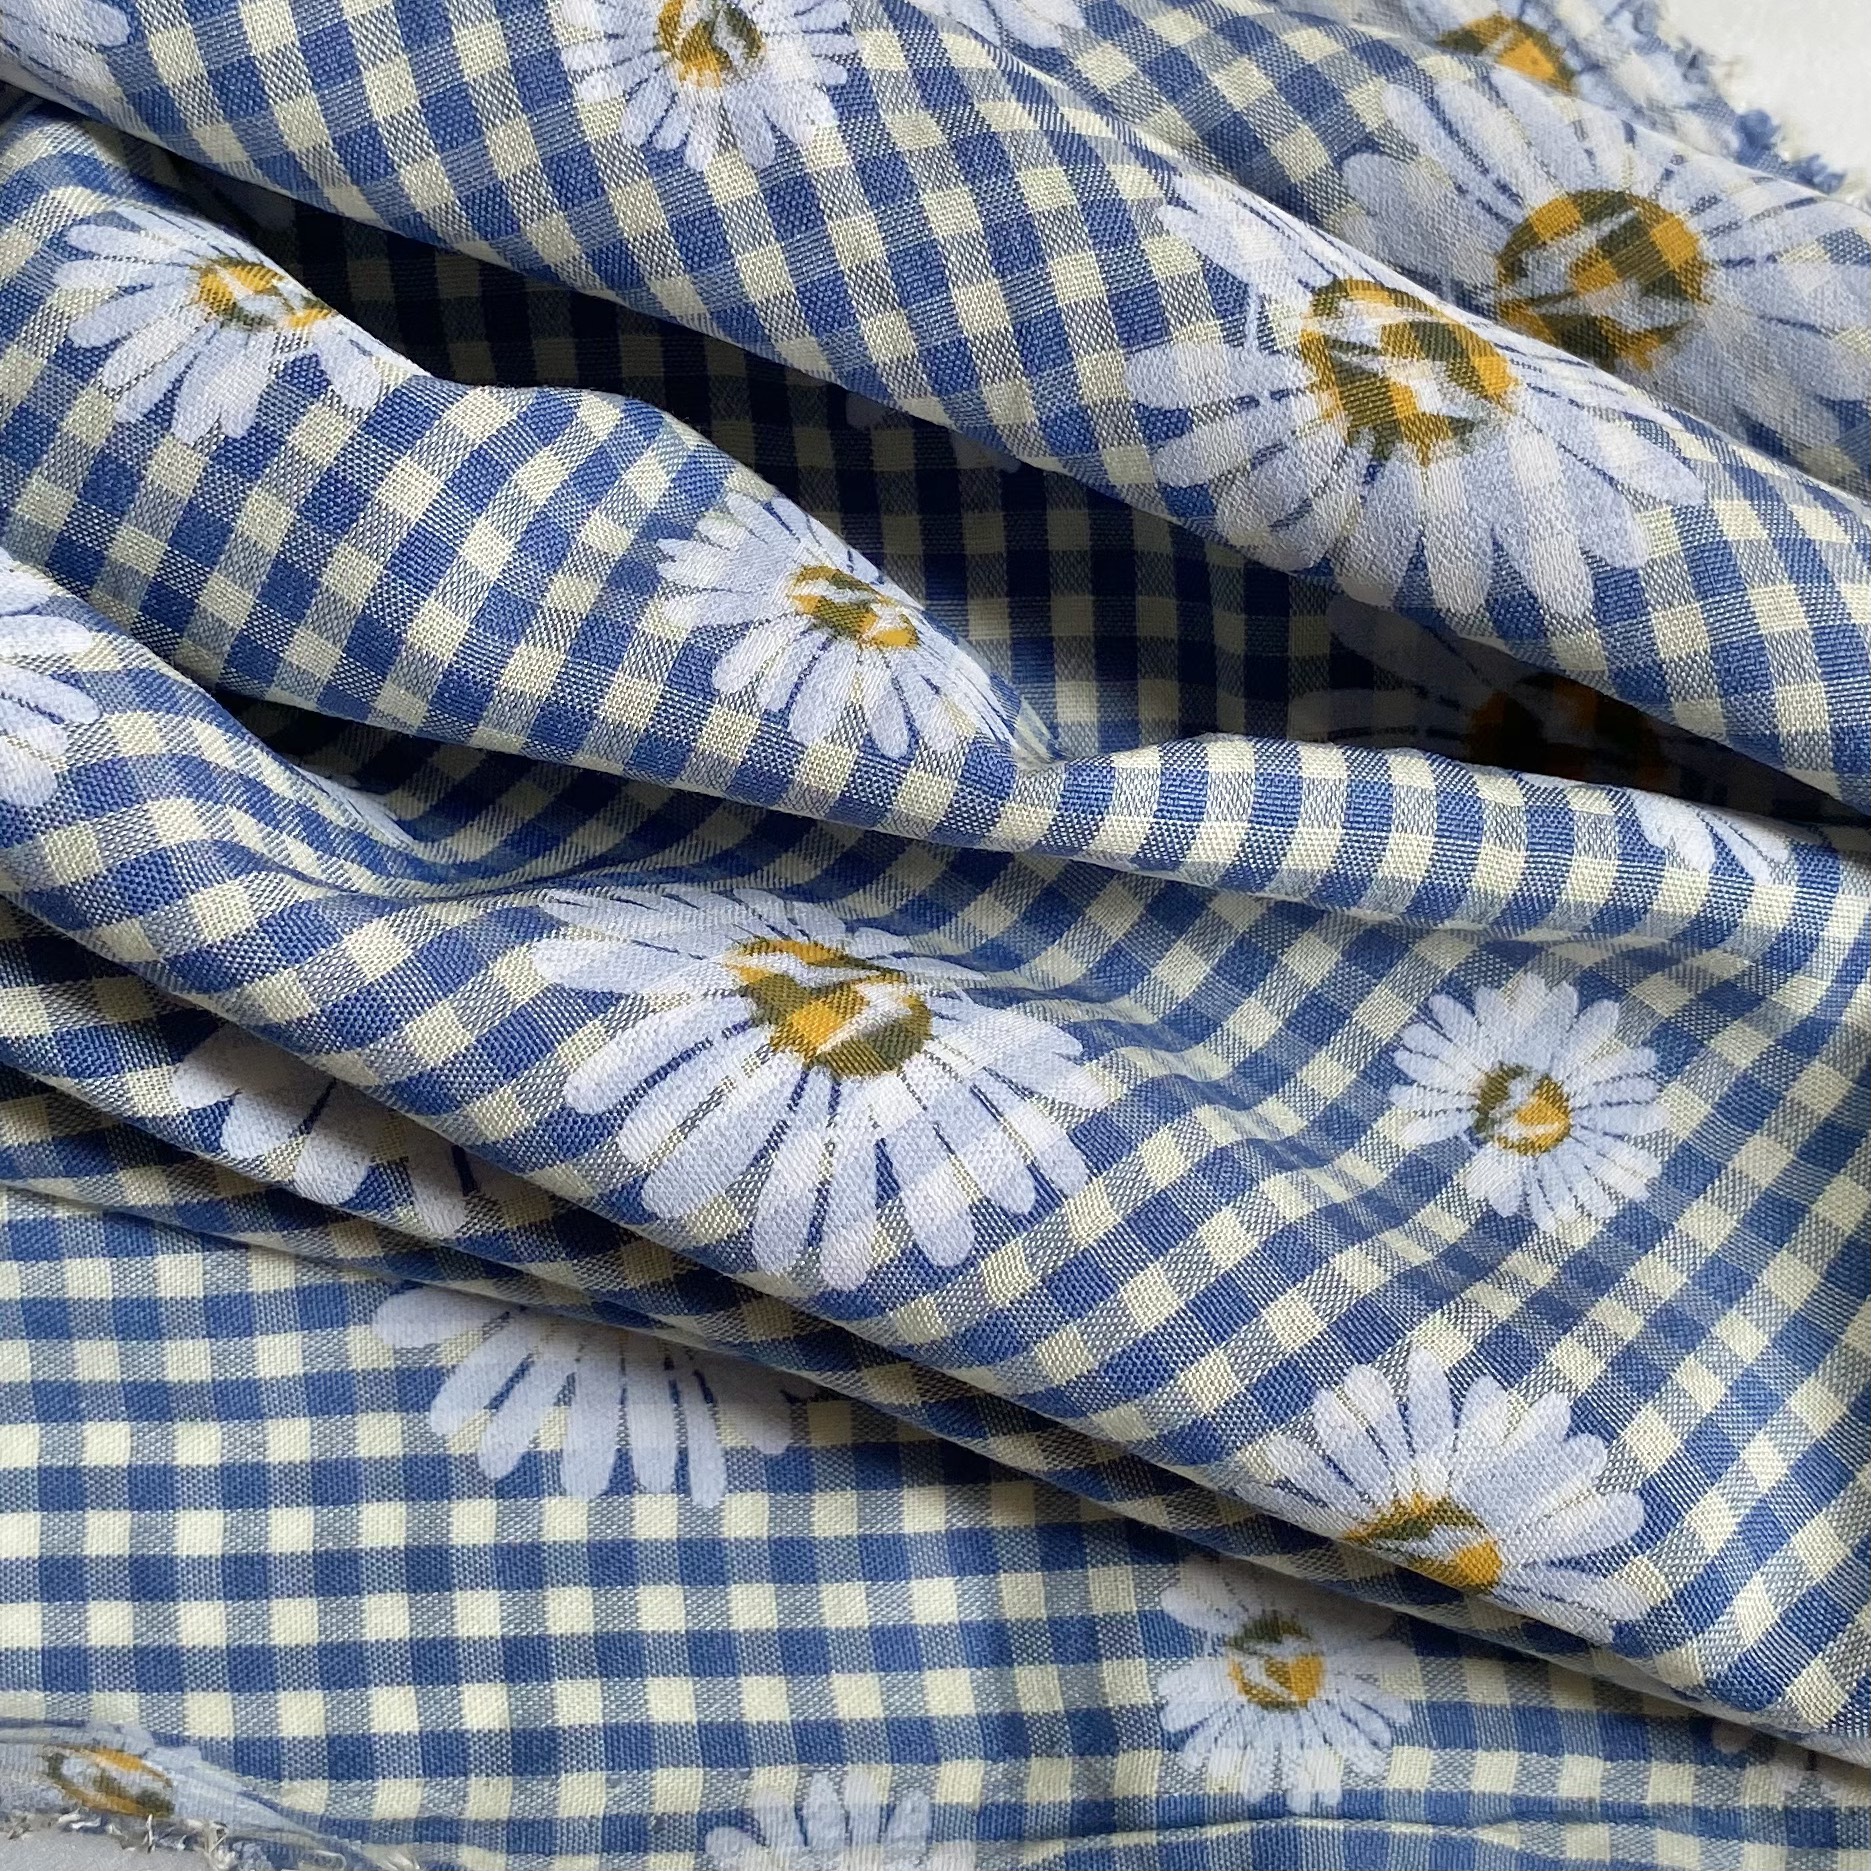 Vải Thô Cotton Pha Xanh Dương Nhỏ Hoa Cúc Sơn Khổ 1m46 - Không Co Giãn - May Đầm, Áo Kiểu, Đồ Bộ, Đồ Trẻ Em